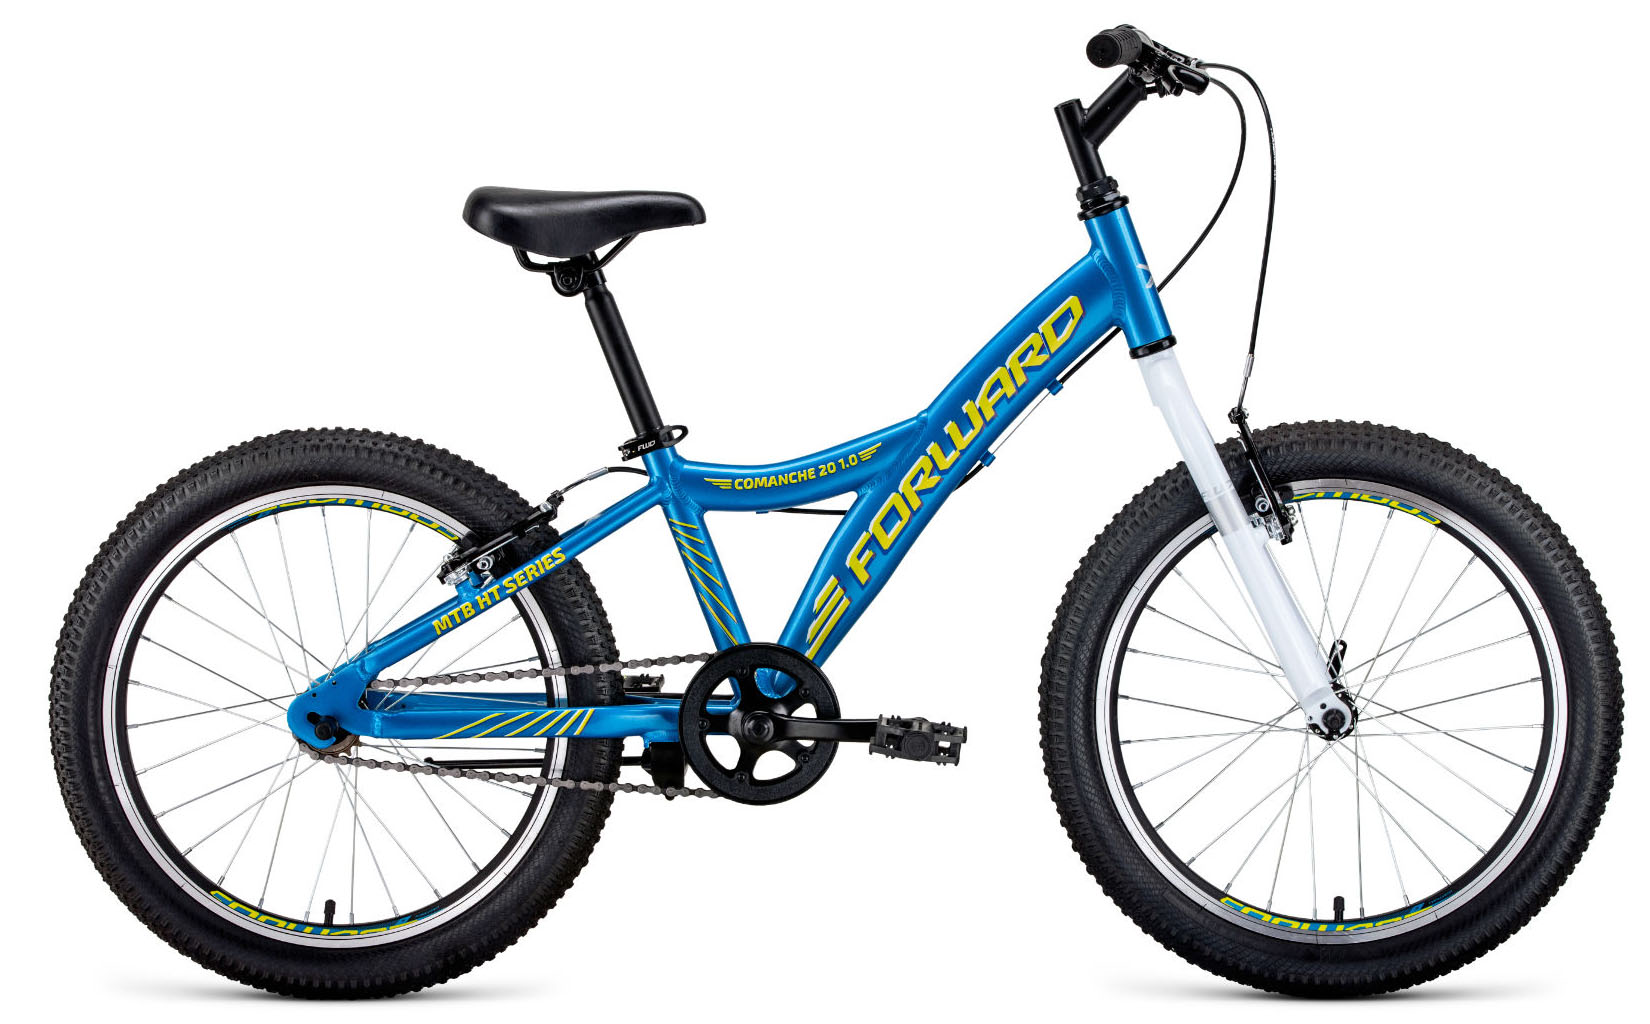  Отзывы о Детском велосипеде Forward Comanche 20 1.0 (2021) 2021